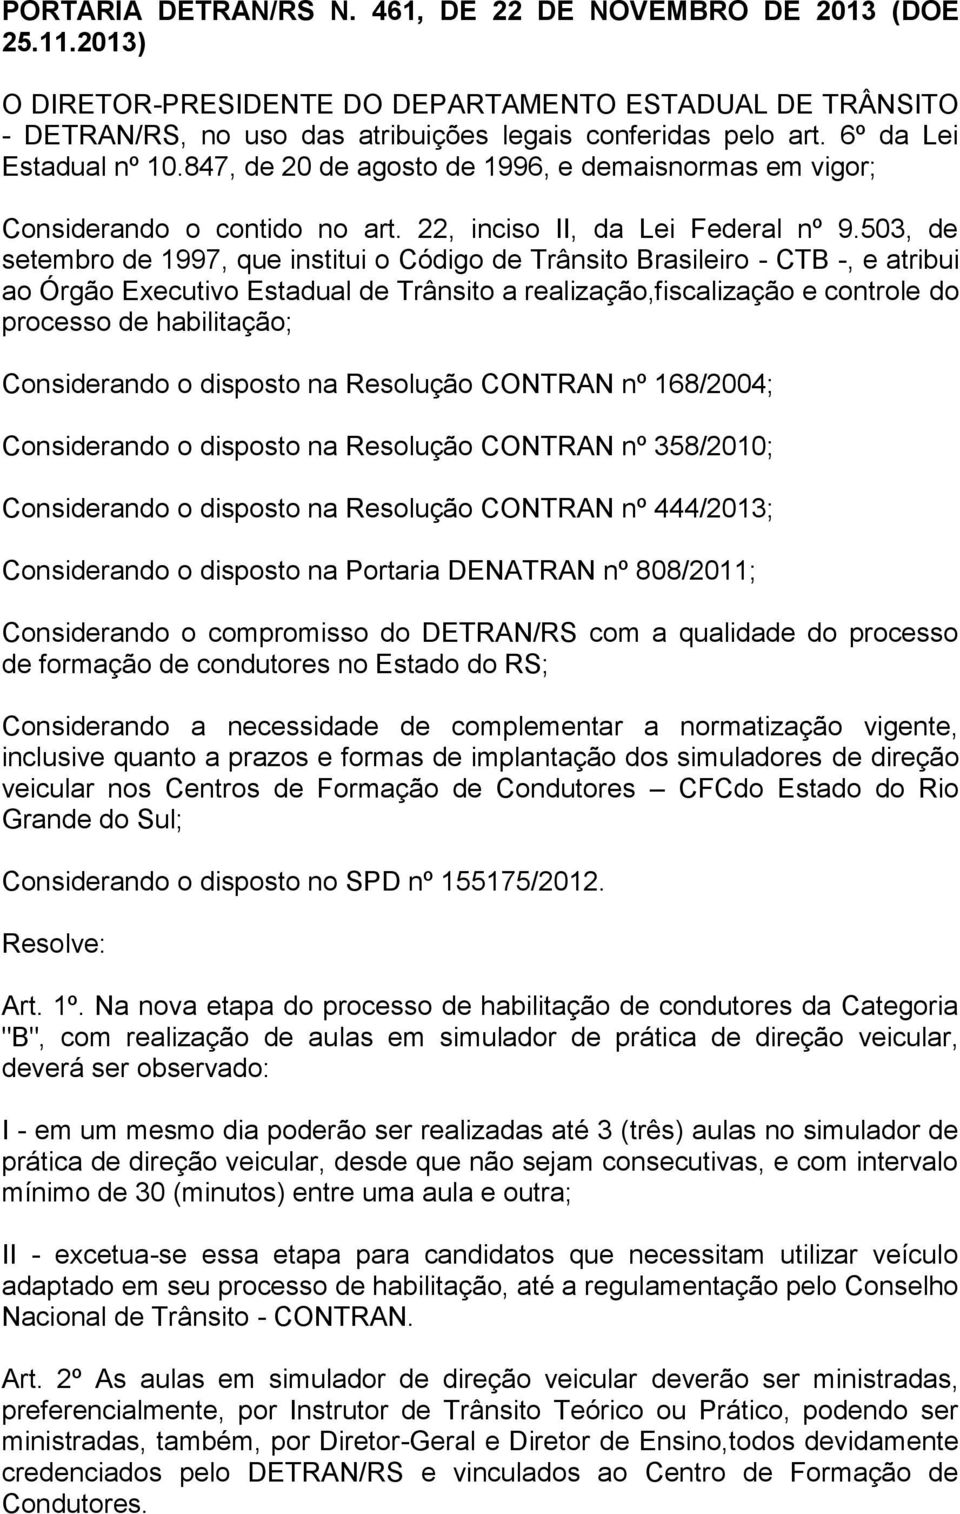 503, de setembro de 1997, que institui o Código de Trânsito Brasileiro - CTB -, e atribui ao Órgão Executivo Estadual de Trânsito a realização,fiscalização e controle do processo de habilitação;